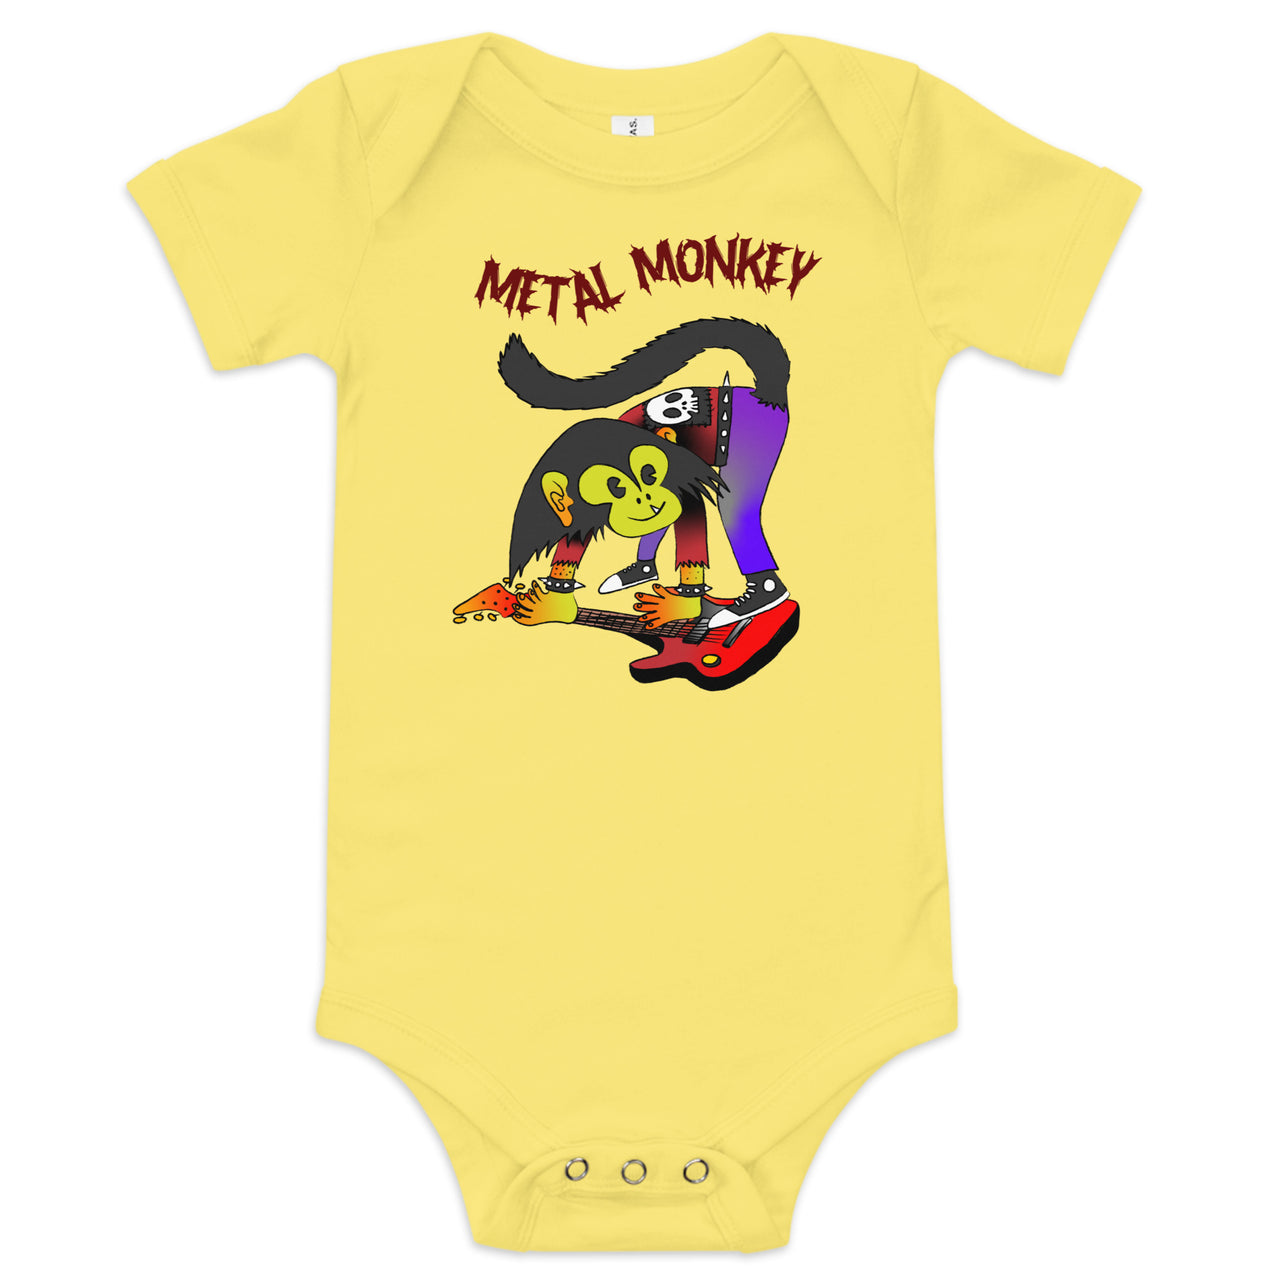 Metal Monkey Baby short sleeve onesie